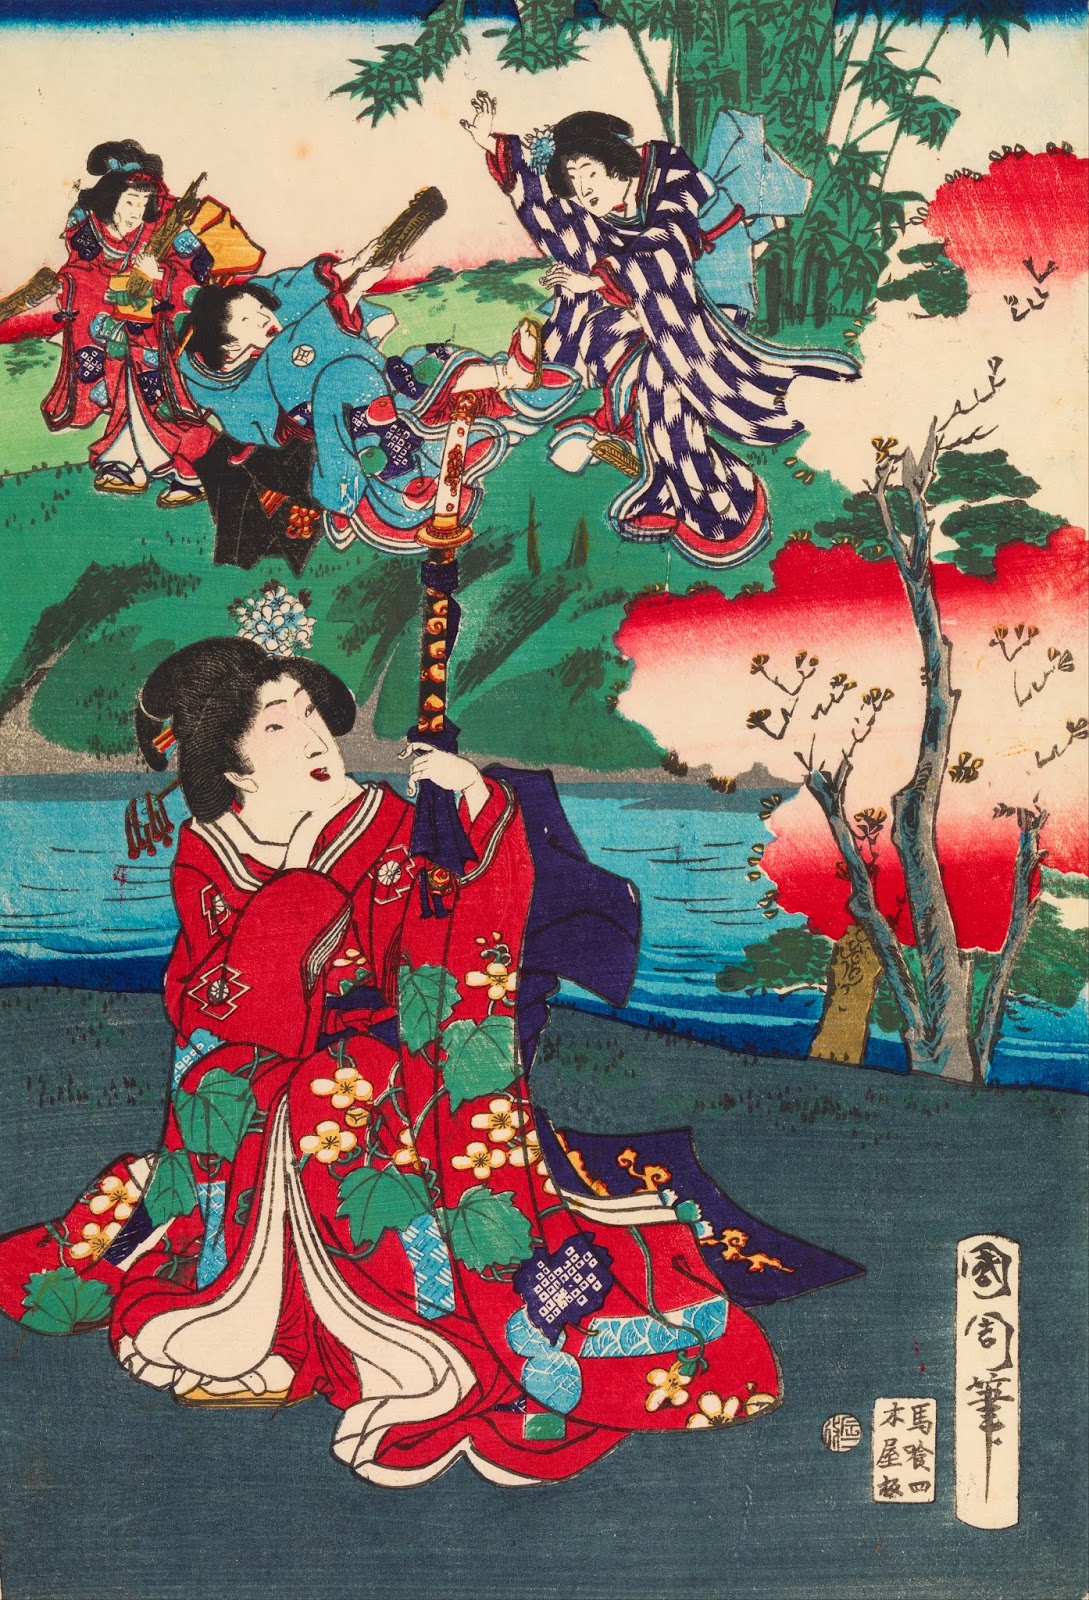 源氏物語 by Toyohara Kunichika - 1868 - 252 x 365 毫米 